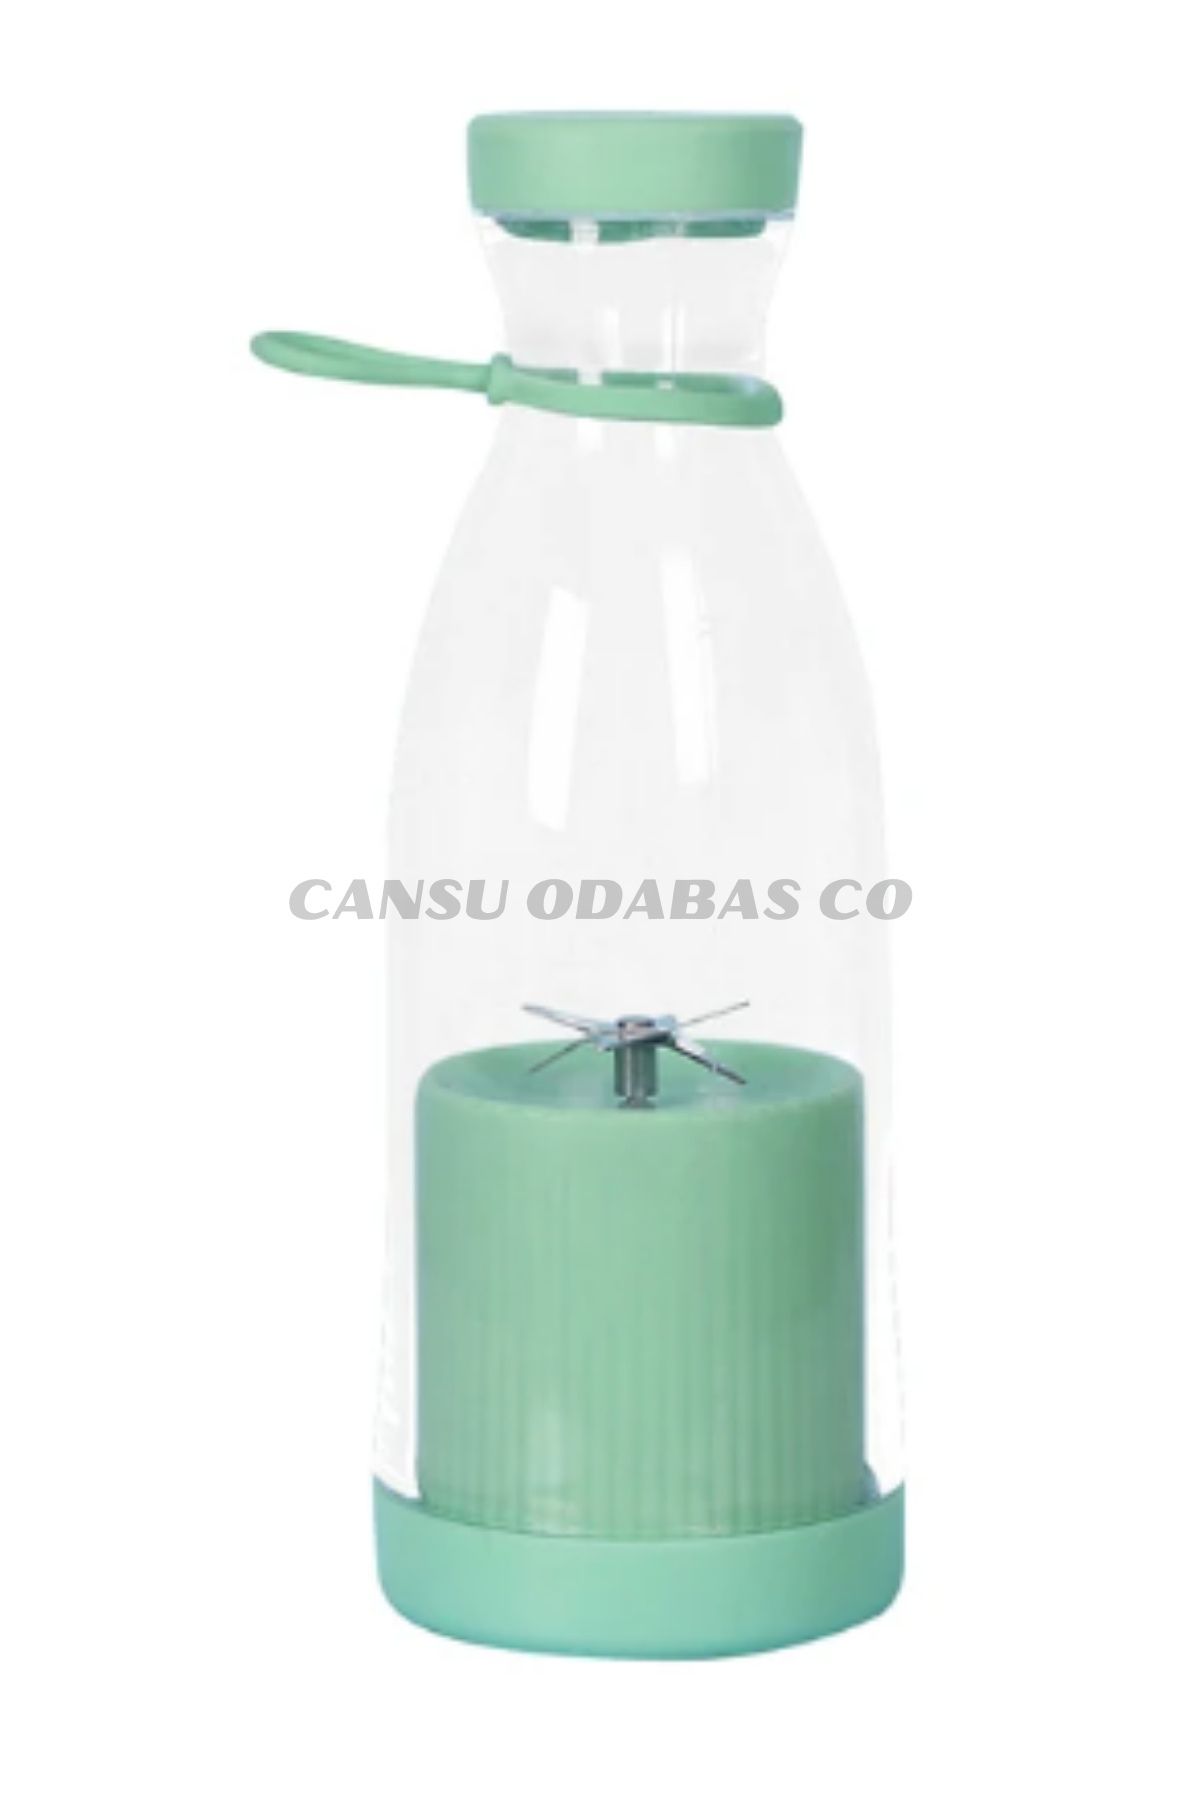 CANSU ODABAS CO Mini Blender, 40W Yüksek Güçlü Şarj Edilebilir 300ml Elektrikli Sıkacağı Blender Ev Için Seyahat